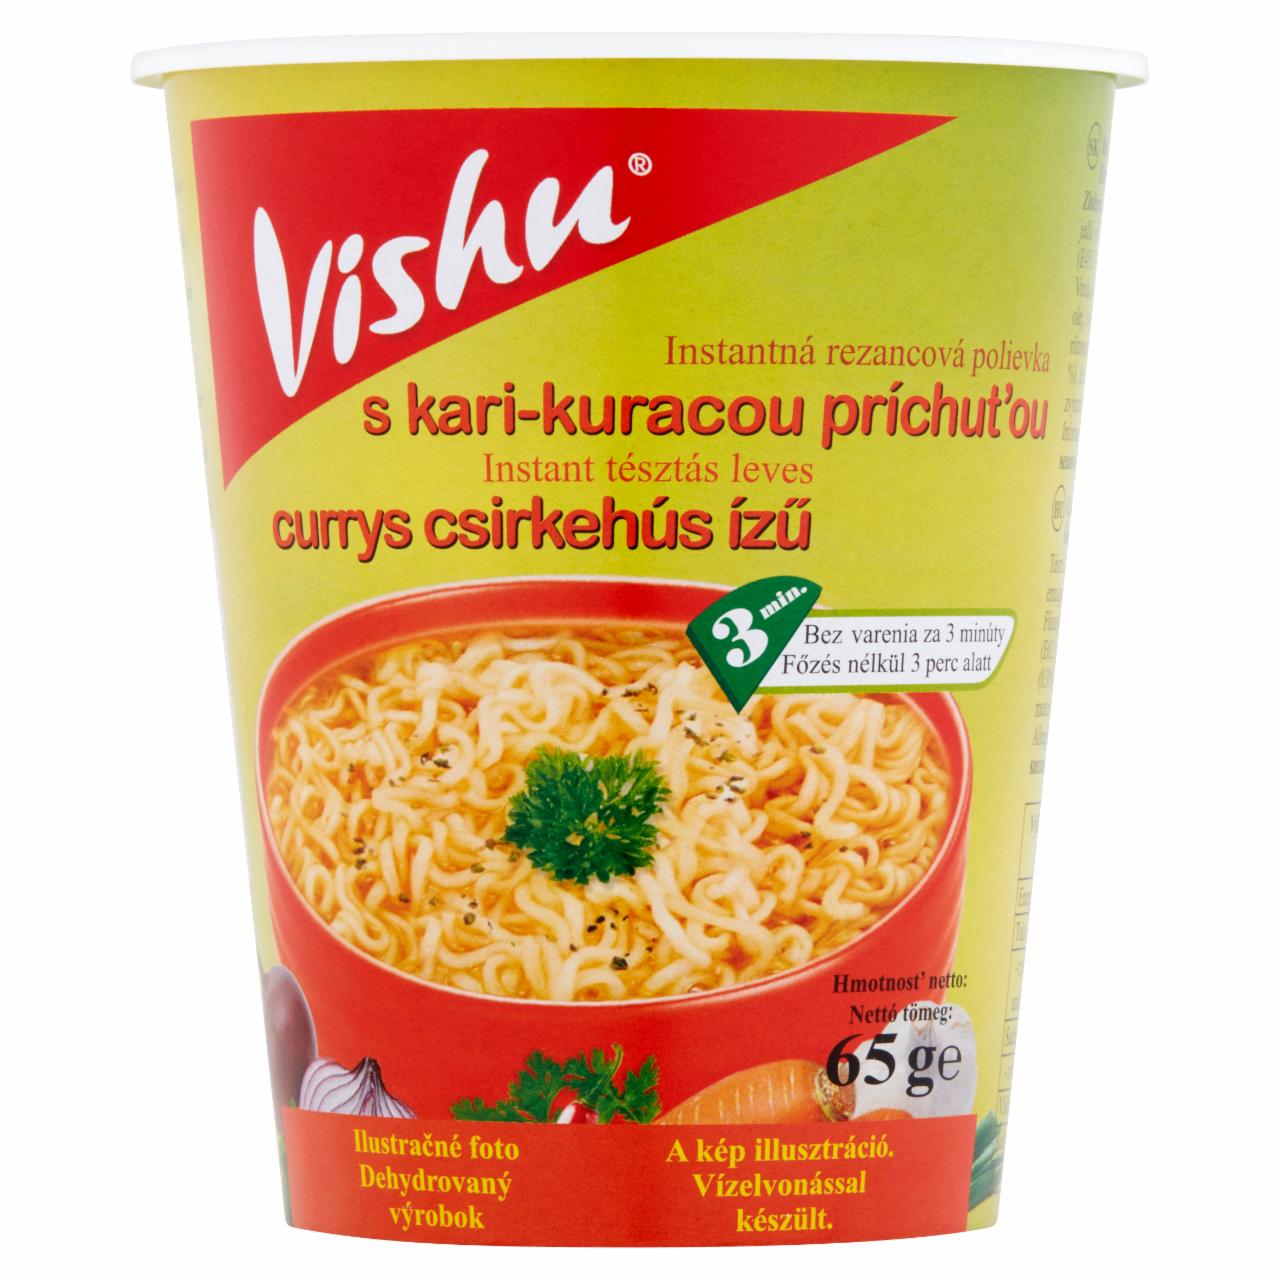 Képek - Vishu currys csirkehús ízű instant tésztás leves 65 g